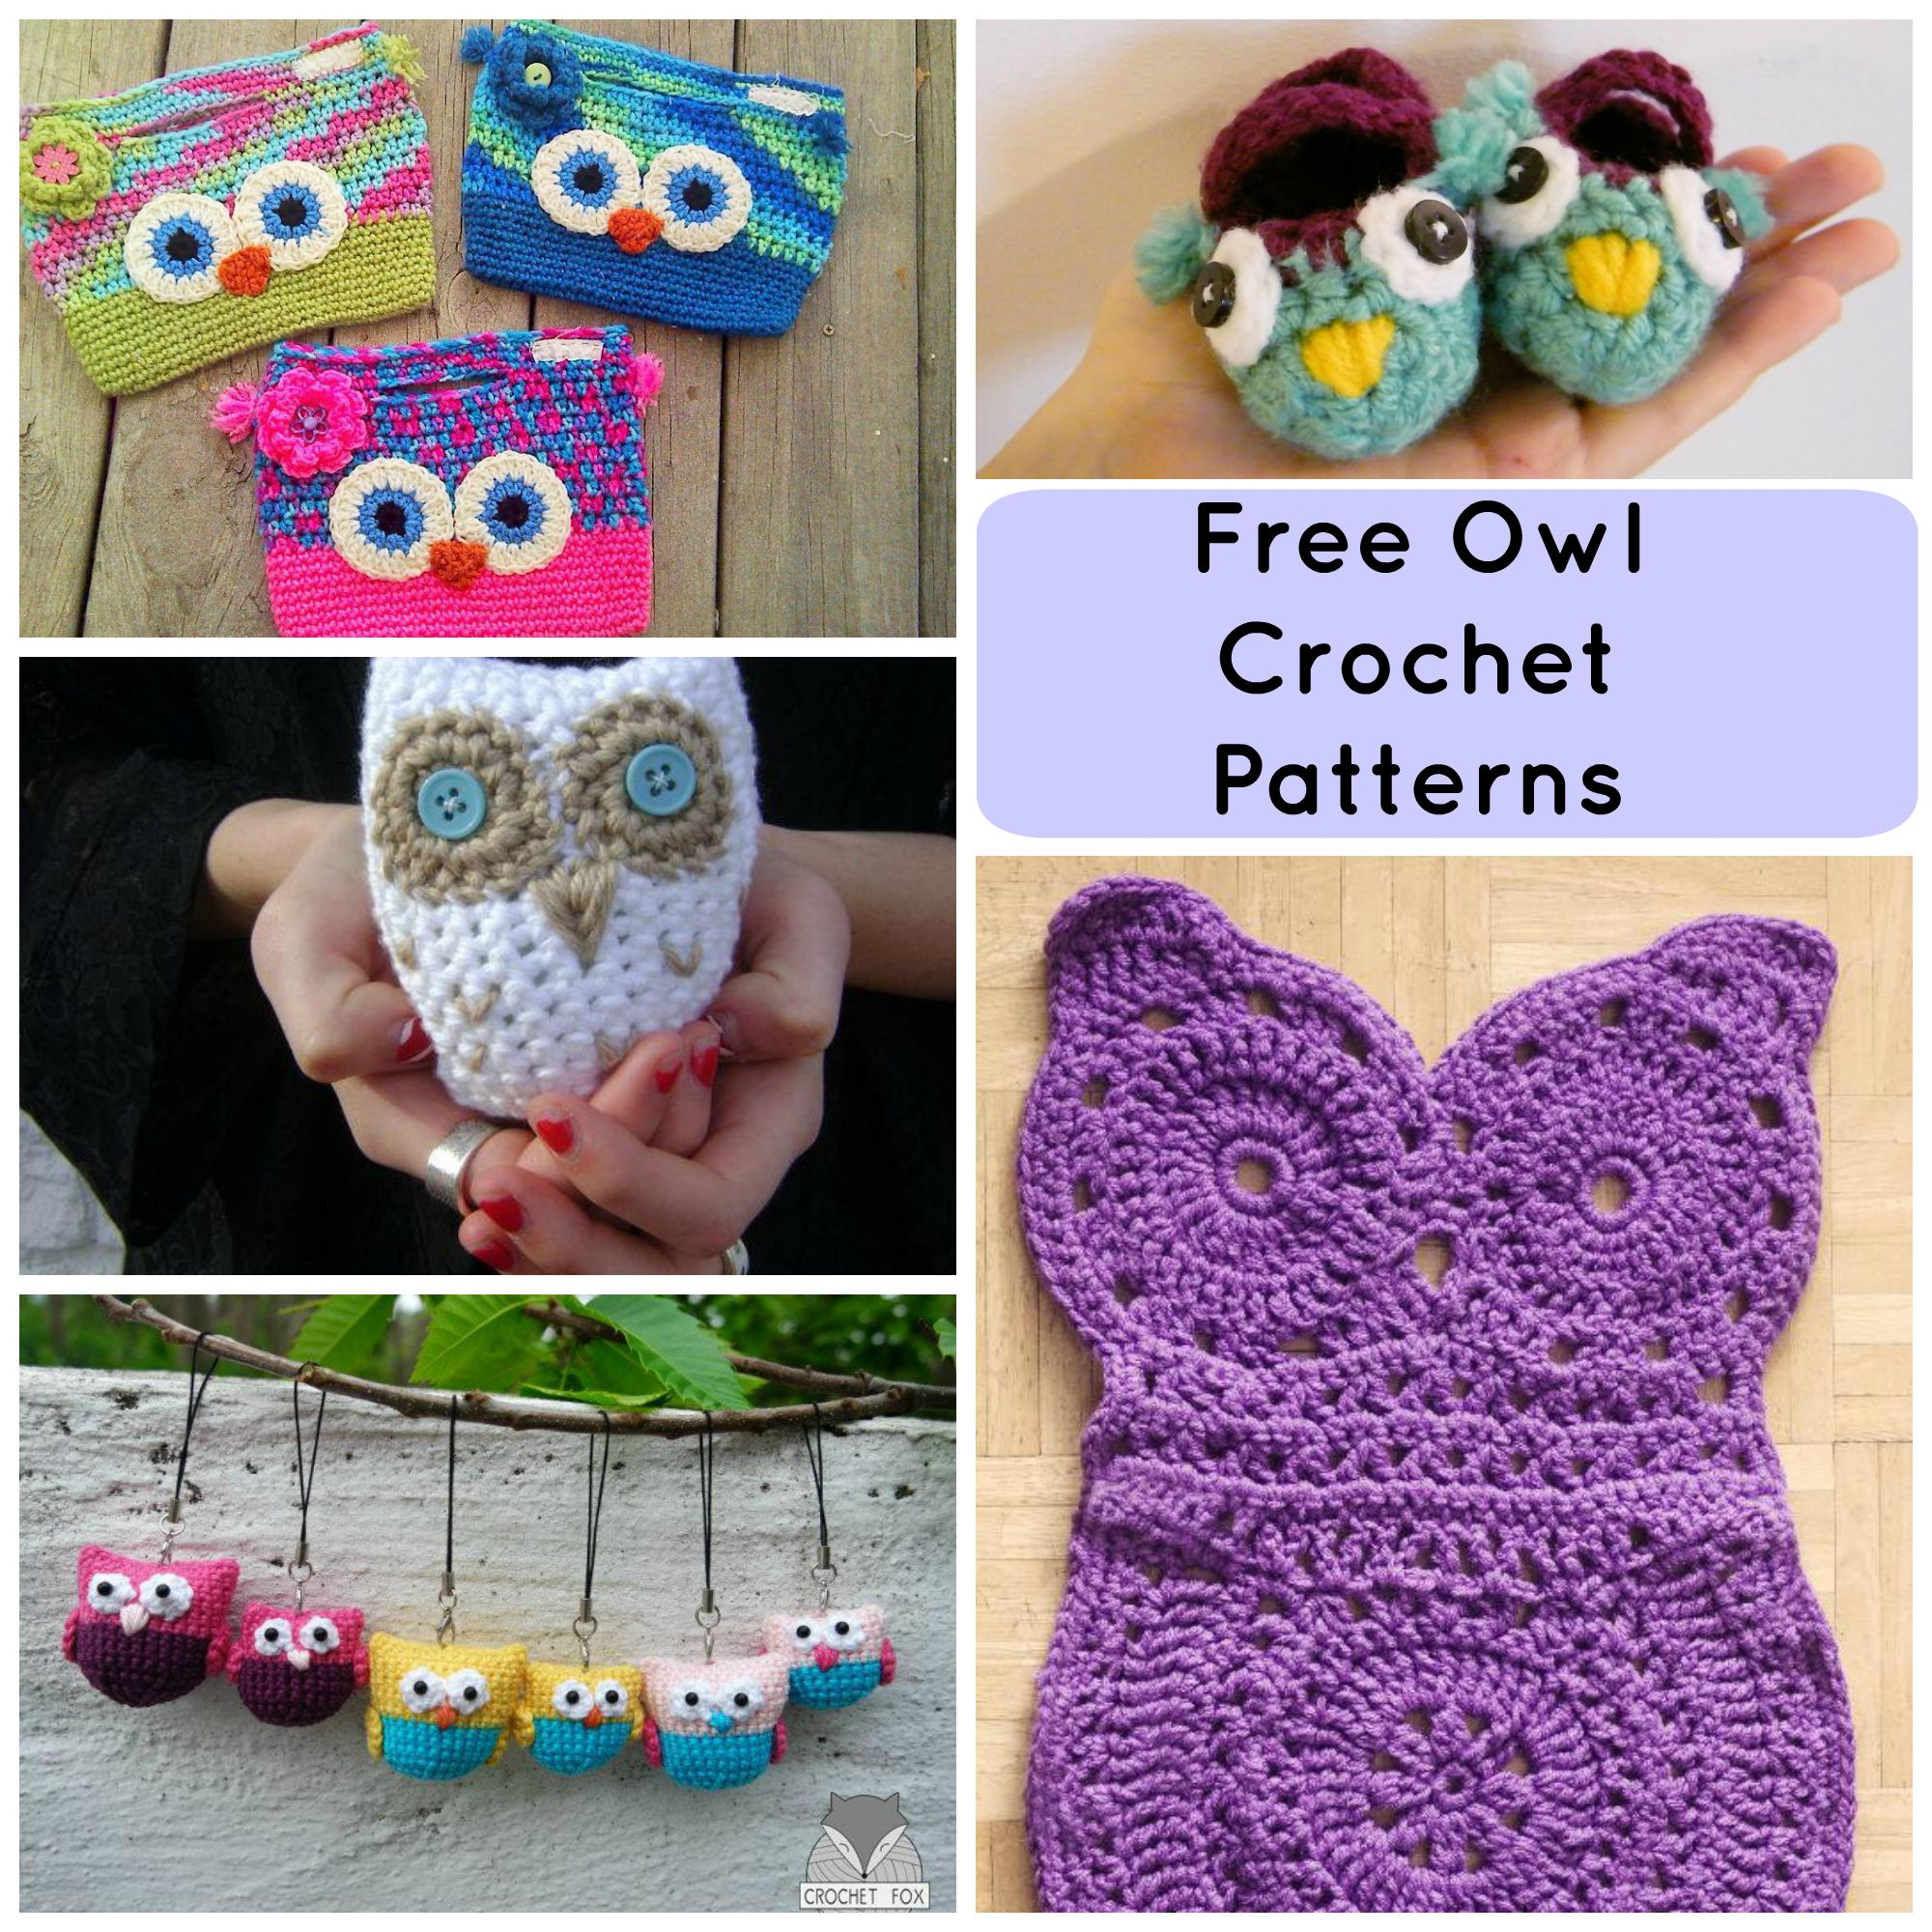 Crochet Pattern Free 7 Hoot Worthy Free Crochet Owl Patterns